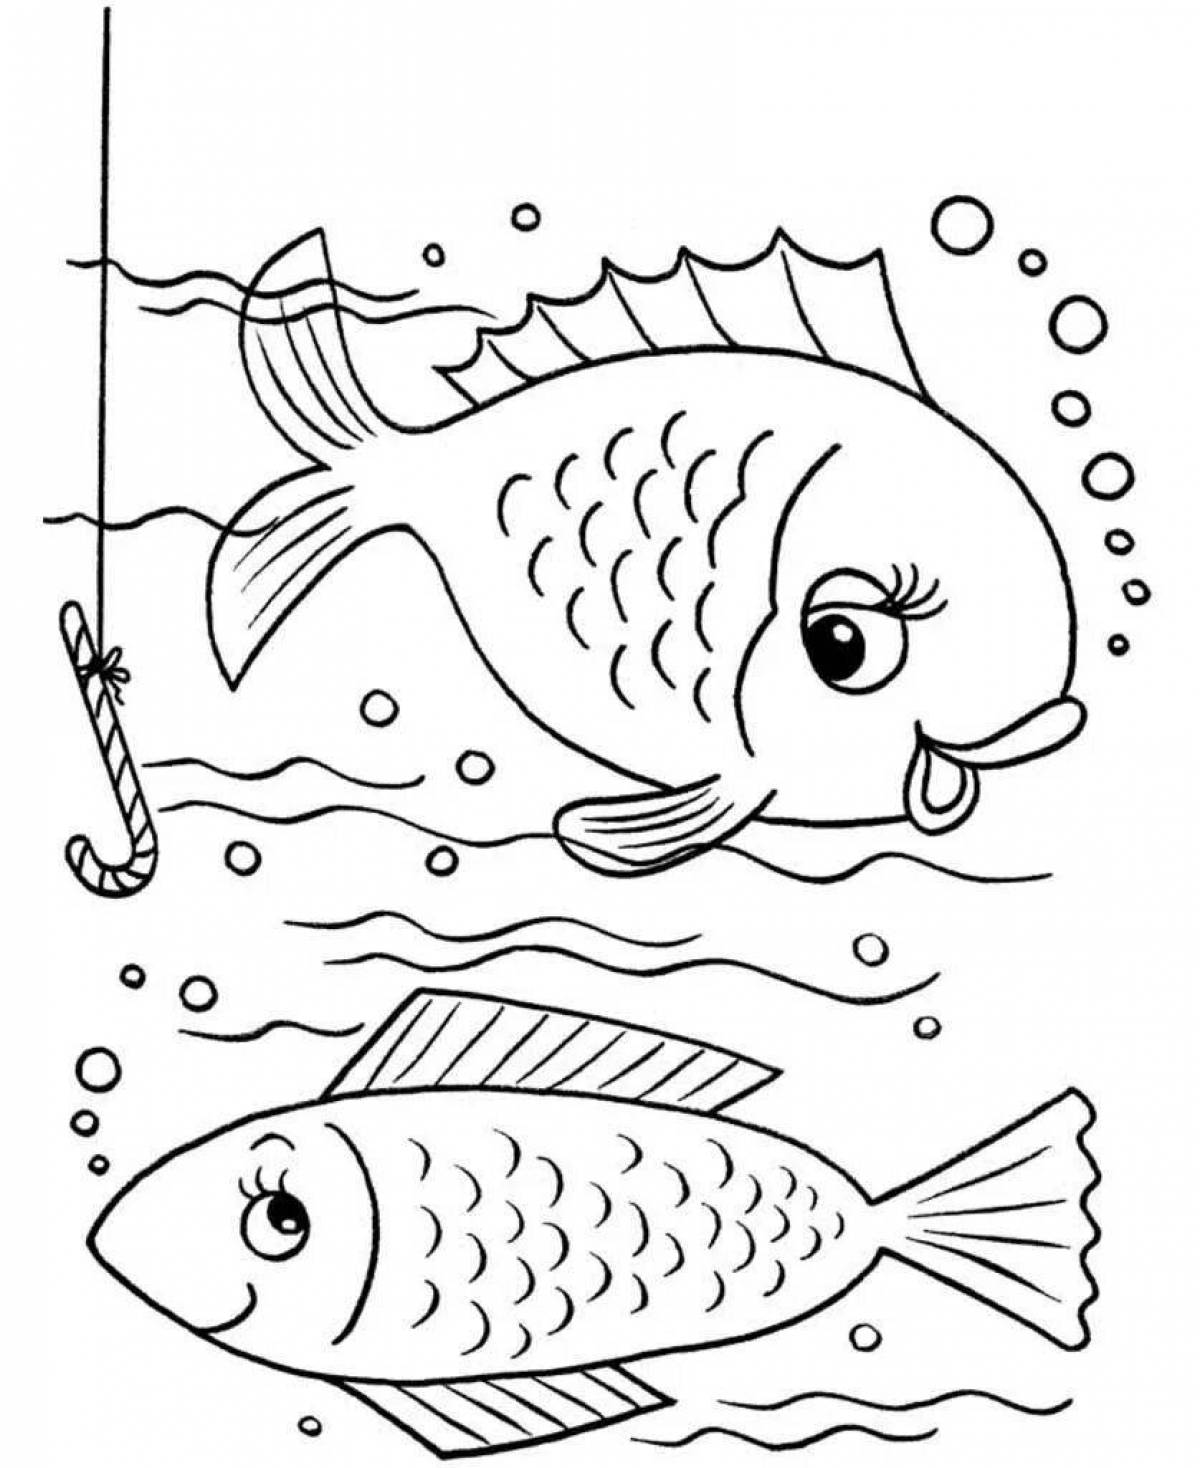 Рыба для ребенка 2. Раскраска рыбка. Рыбка раскраска для детей. Рисунок рыбки для раскрашивания. Рыба раскраска для детей.